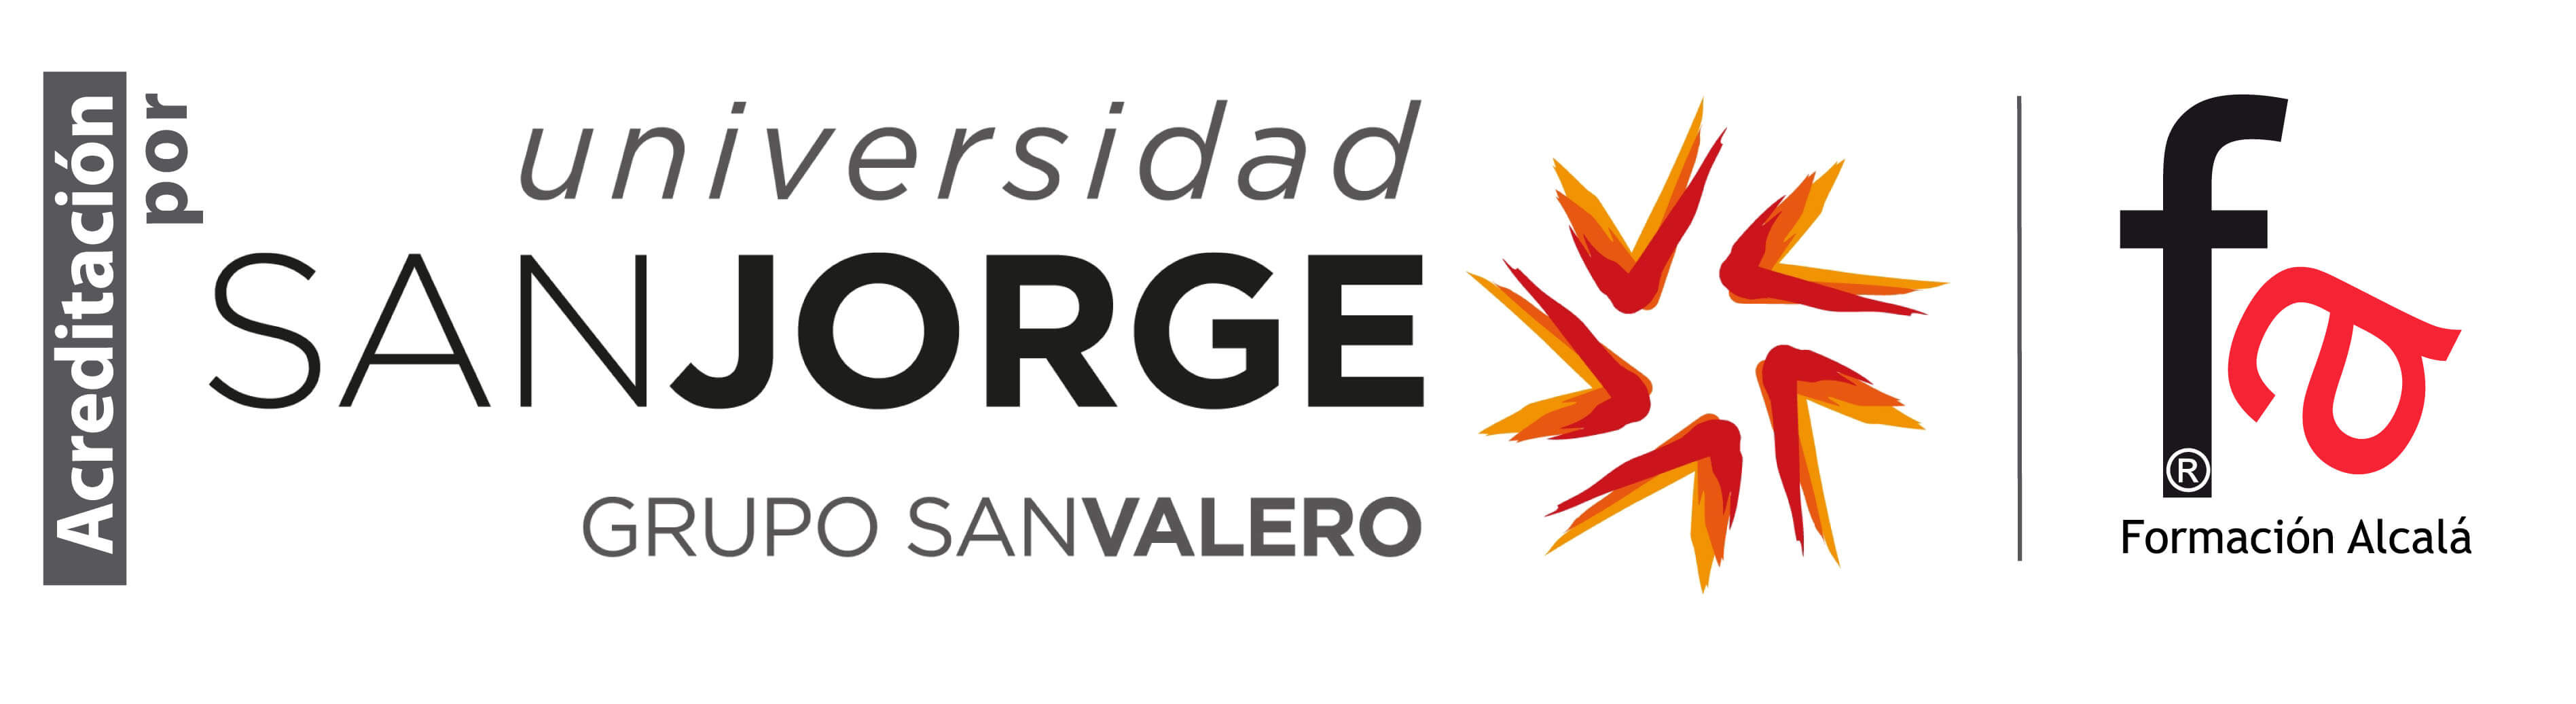 Logos San Jorge y Formación Alcalá